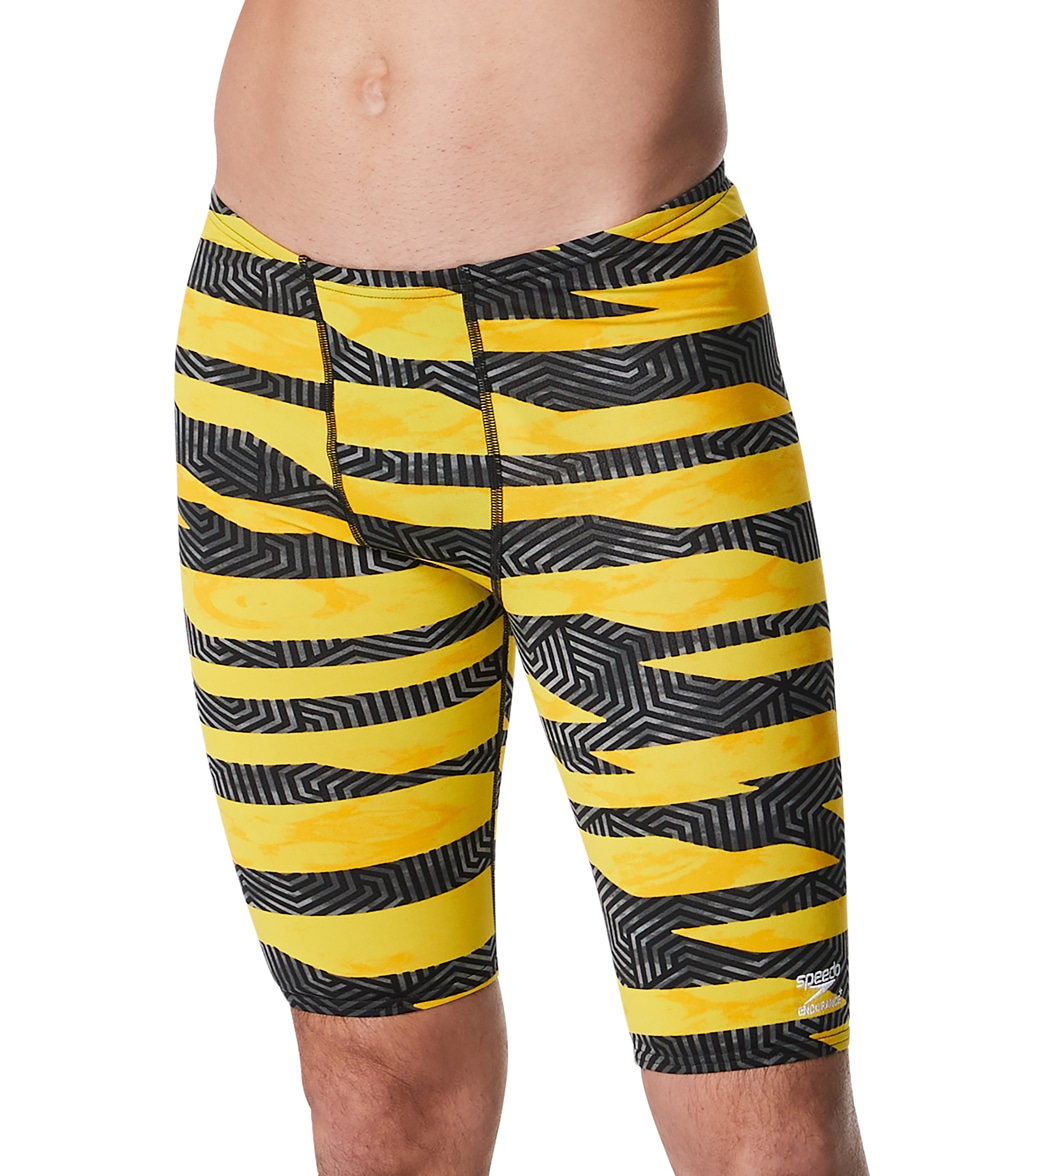 Speedo Men's Contort Stripes Jammer Swimsuit - Yellow 28 - Swimoutlet.com